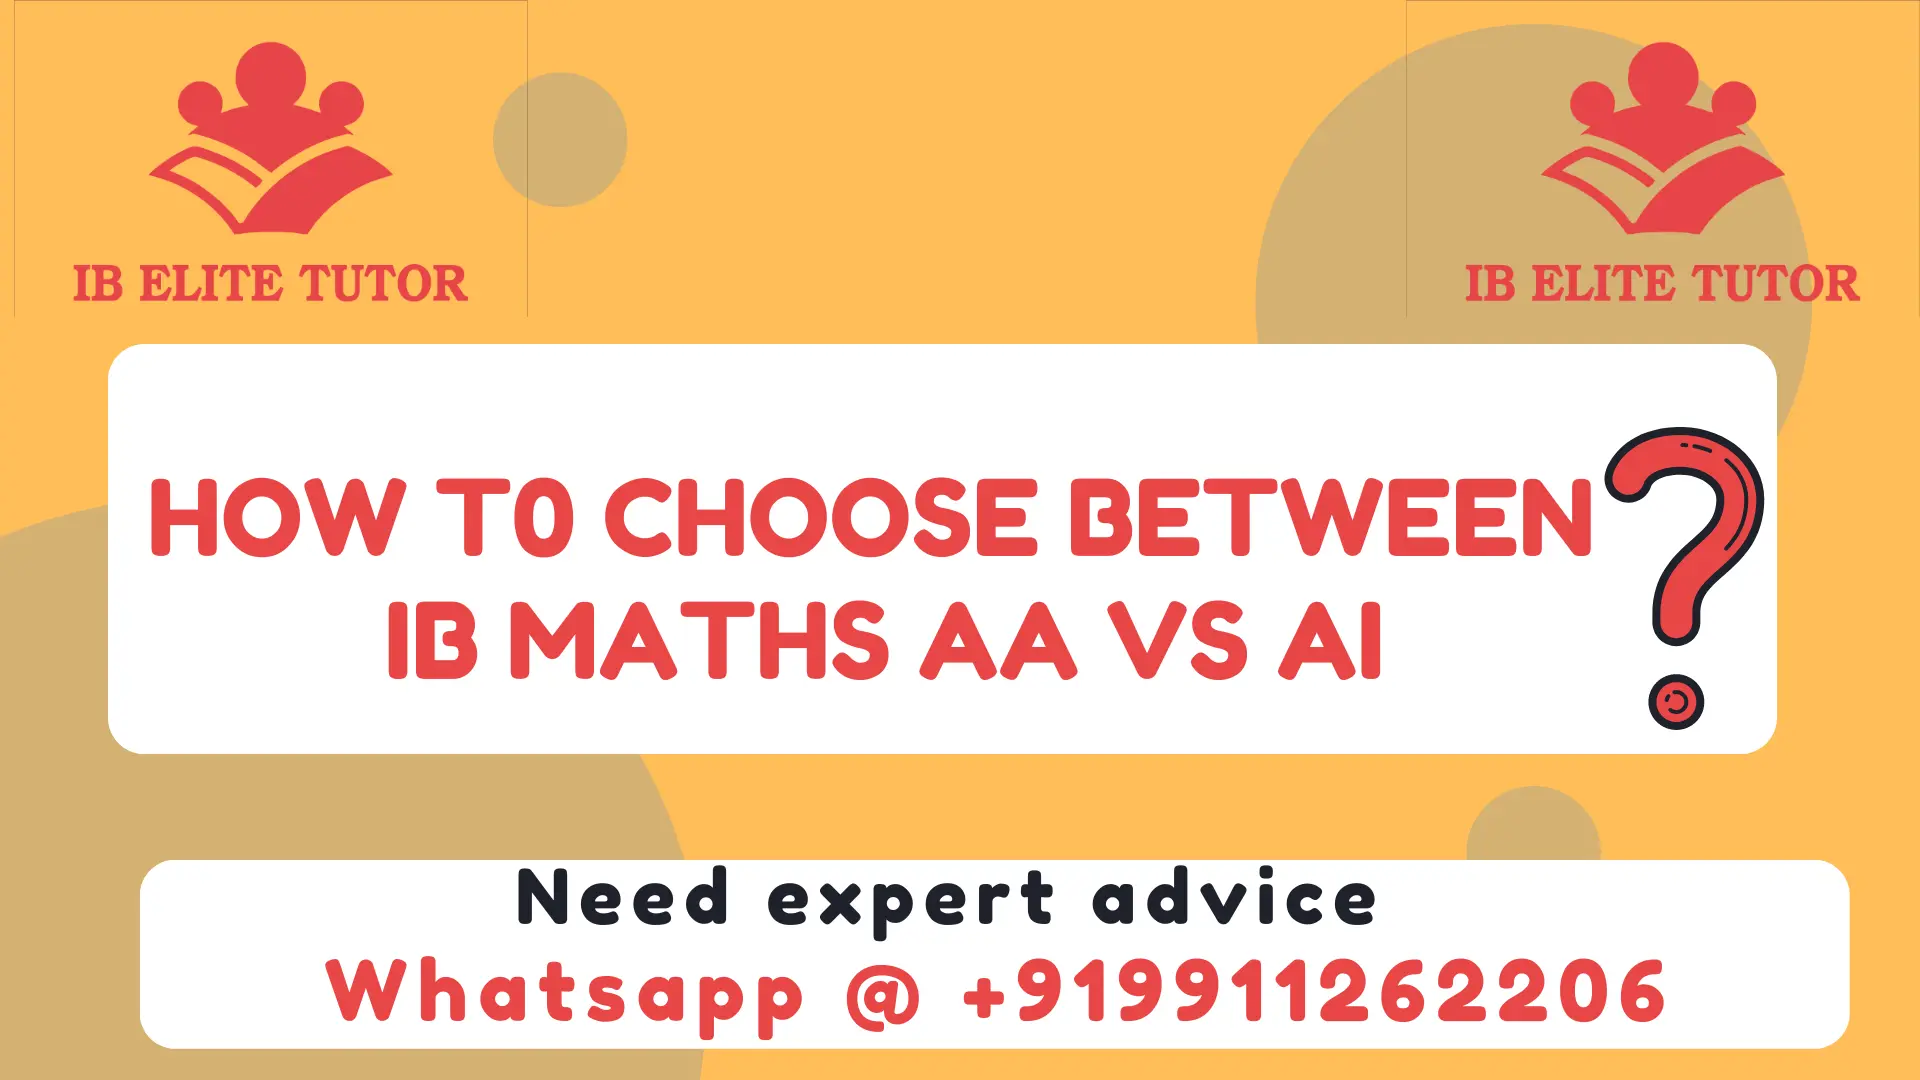 IB Maths AA vs IB Maths AI